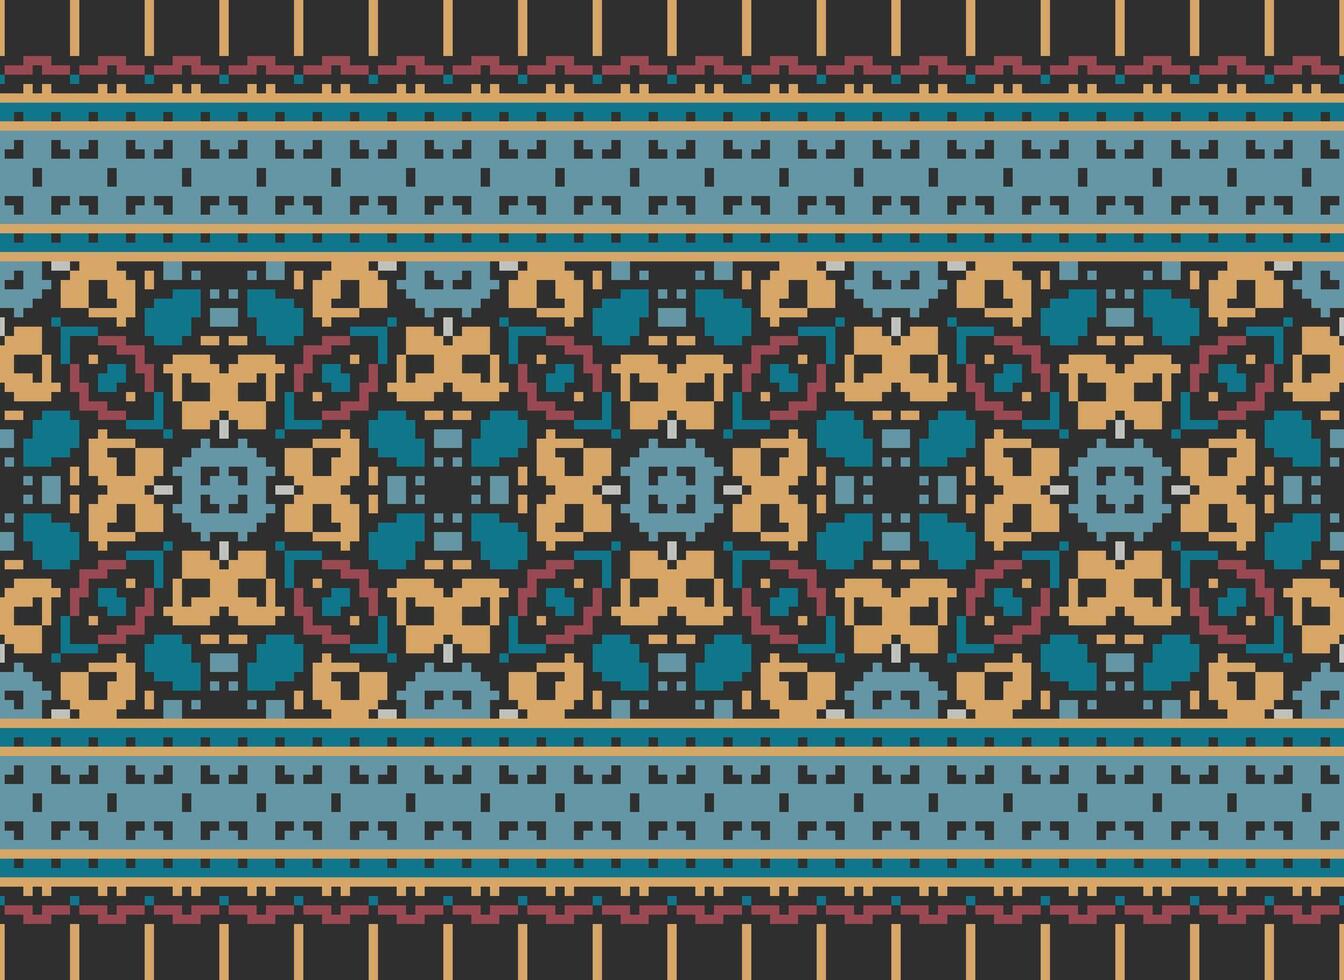 Kreuz Stich. Pixel. geometrisch ethnisch orientalisch nahtlos Muster traditionell Hintergrund. Azteken-Stil abstrakt Vektor Illustration. Design zum Textil, Vorhang, Teppich, Hintergrund, Kleidung, Verpackung